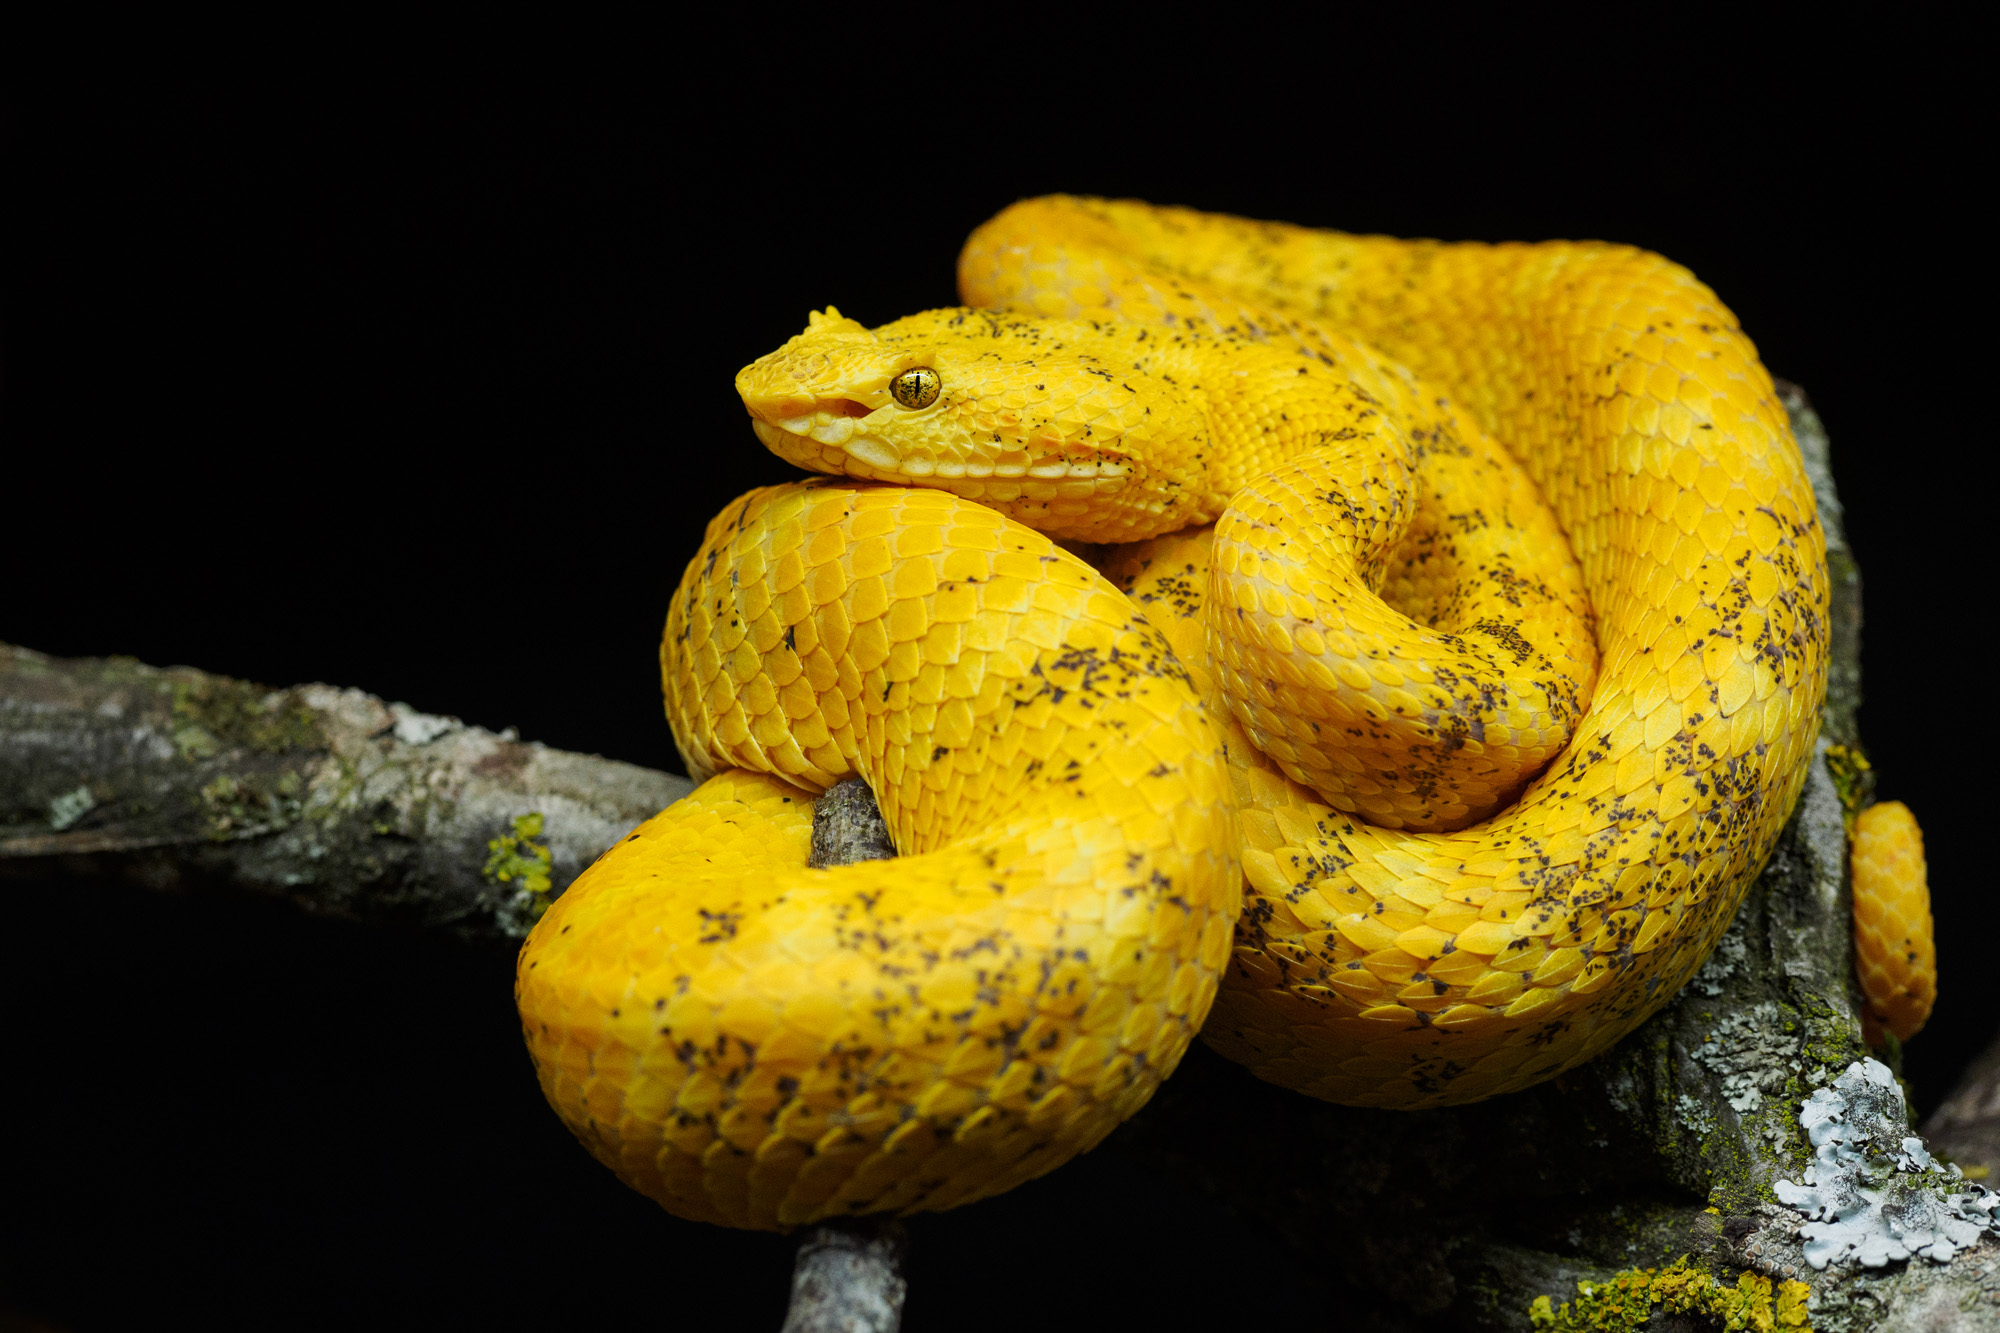 Bothriechis schlegelii, Eyelash viper, Greifschwanz-Lanzenotter (adult female)